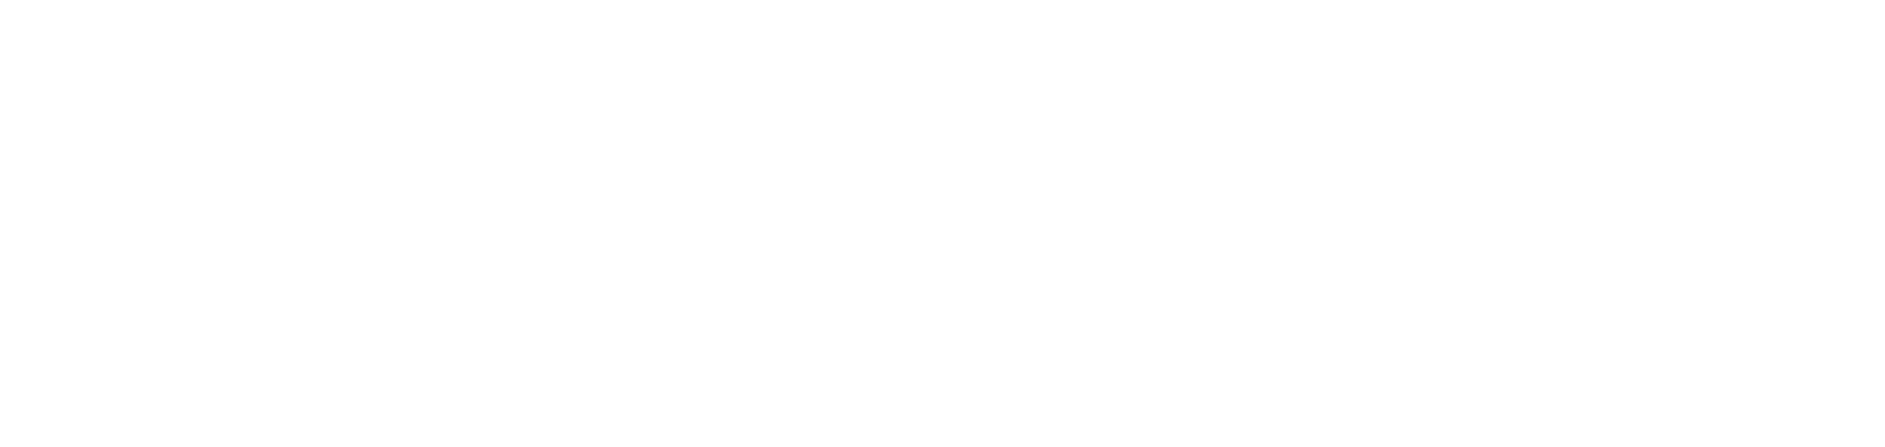 Cycle Logic Logo